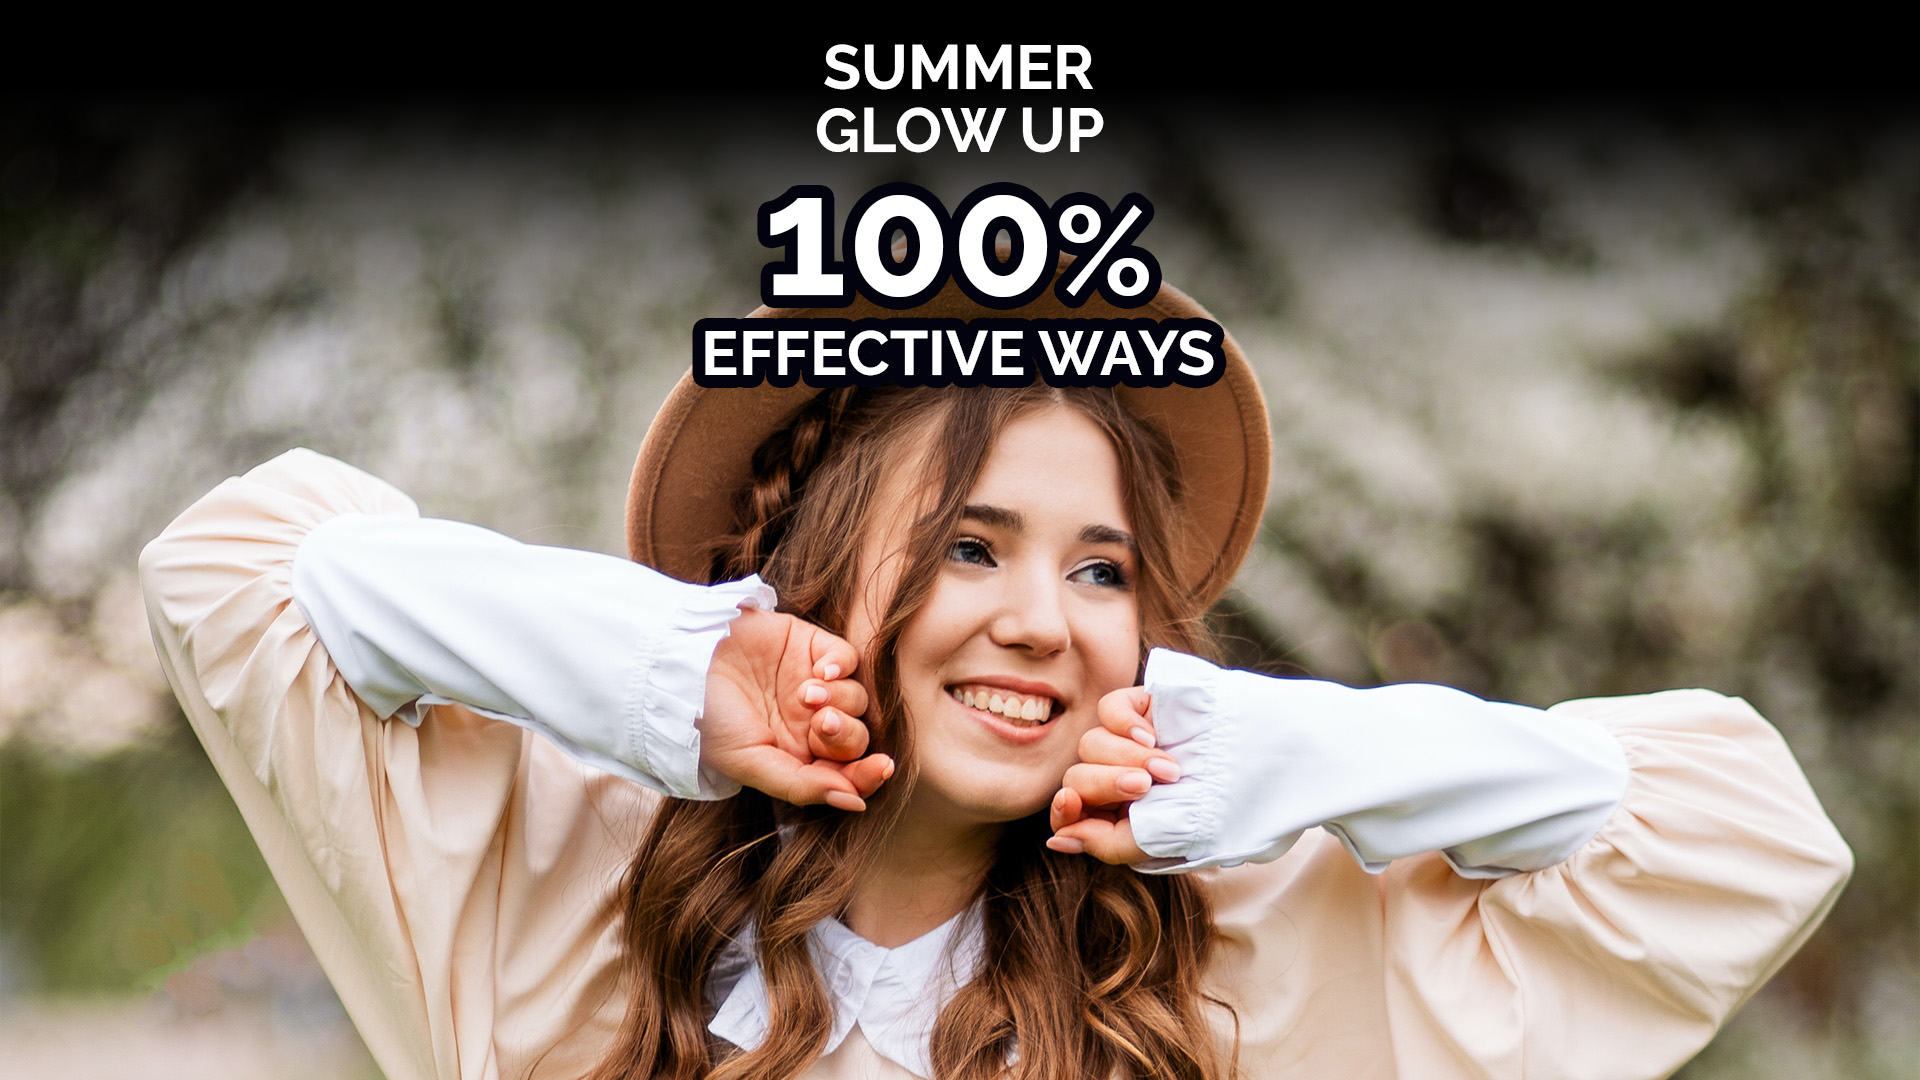 Summer Glow Up: 100% Effective Ways